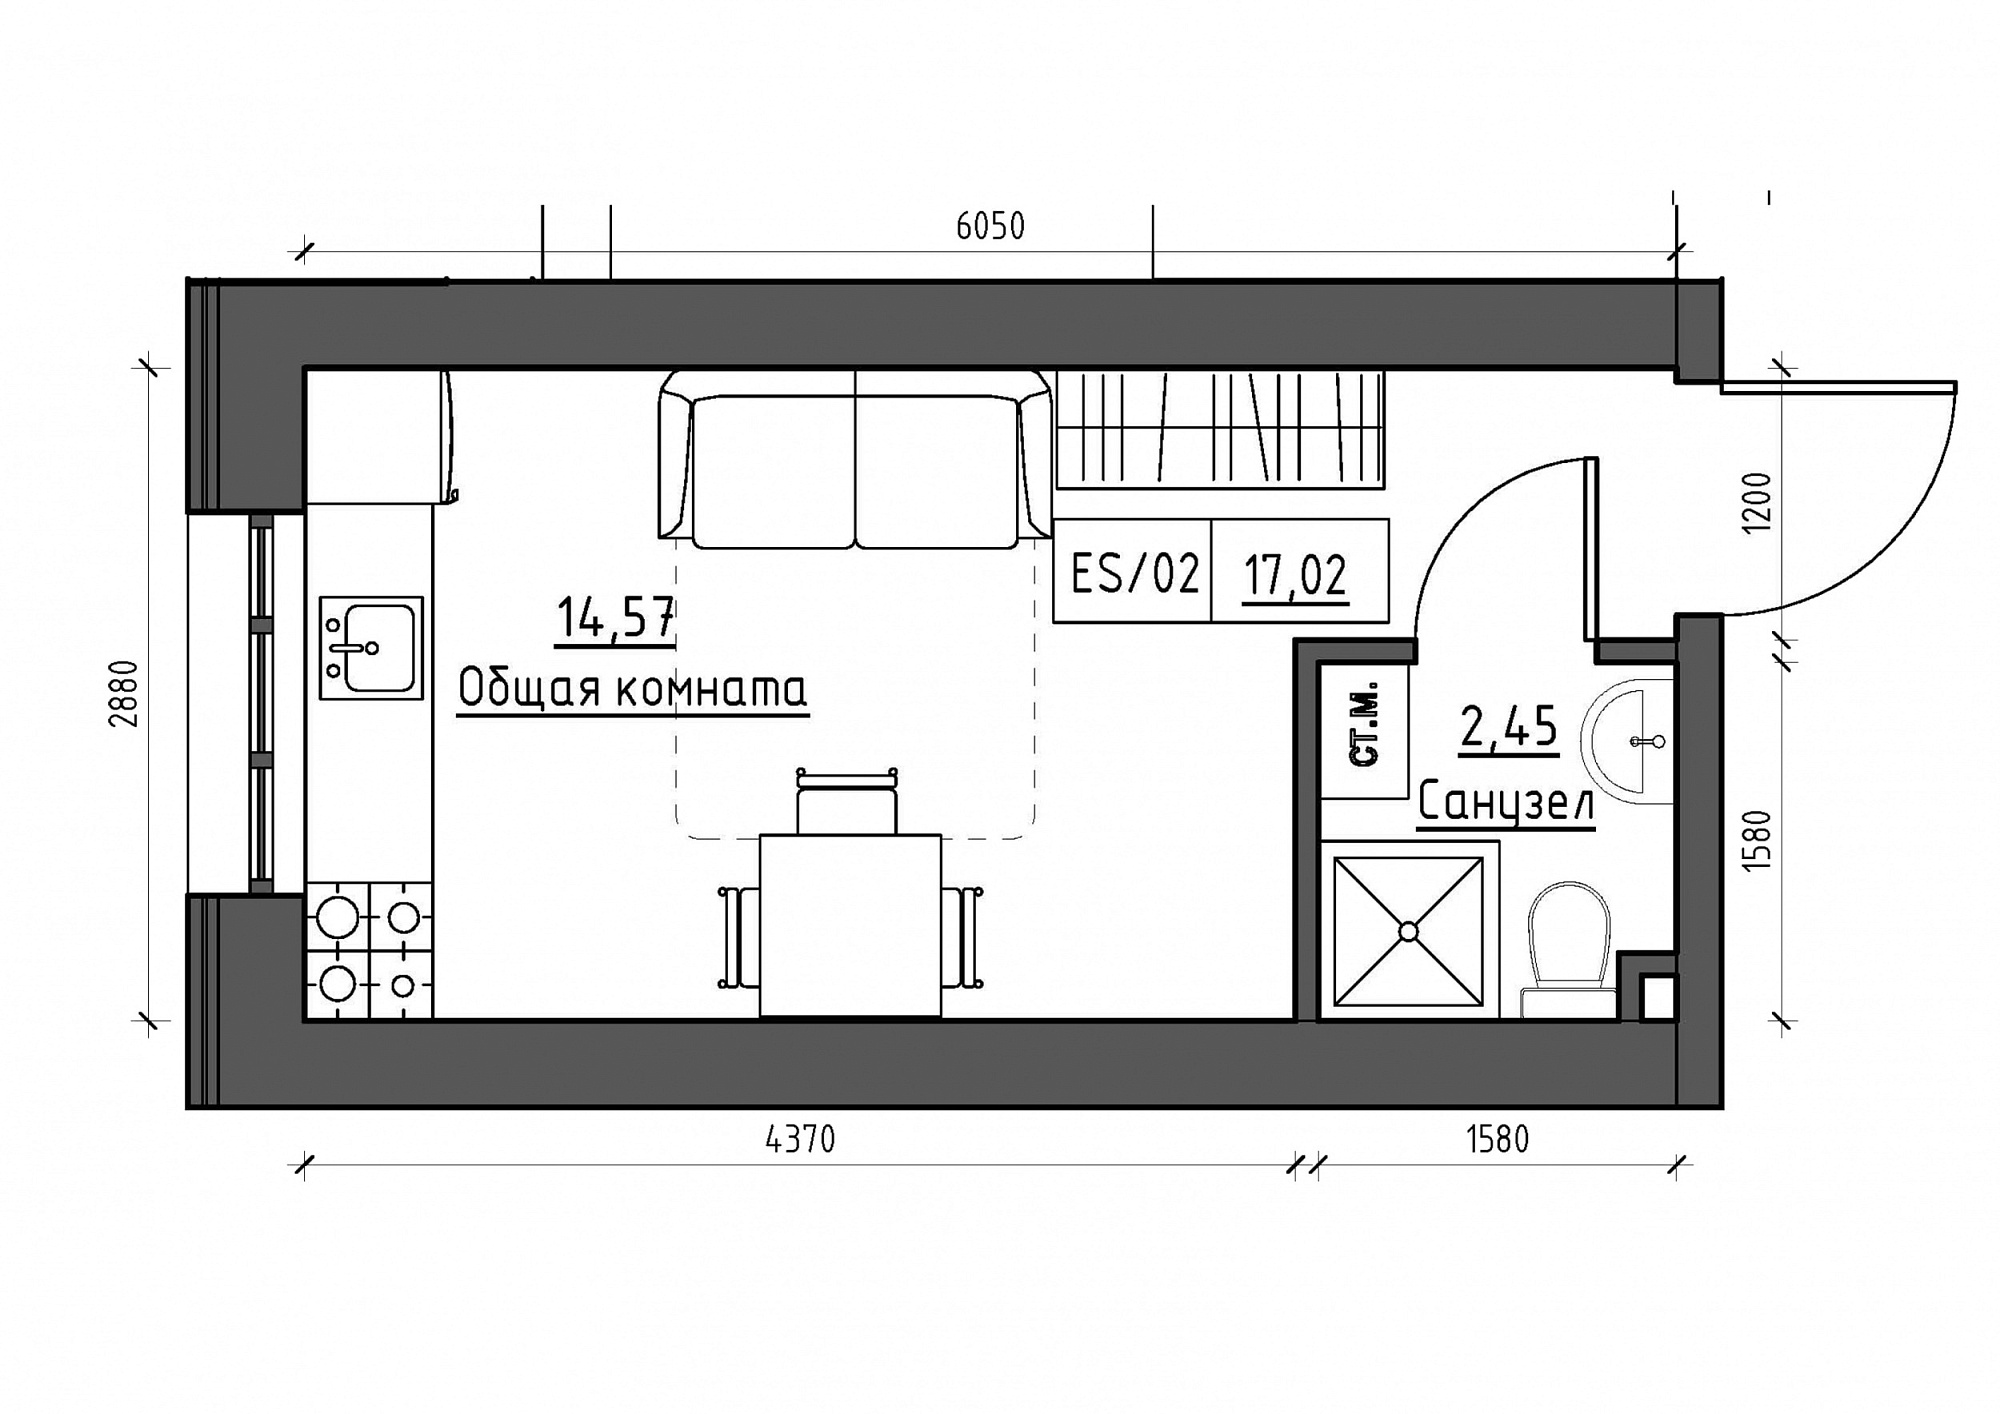 Планування Smart-квартира площею 17.02м2, KS-011-05/0002.